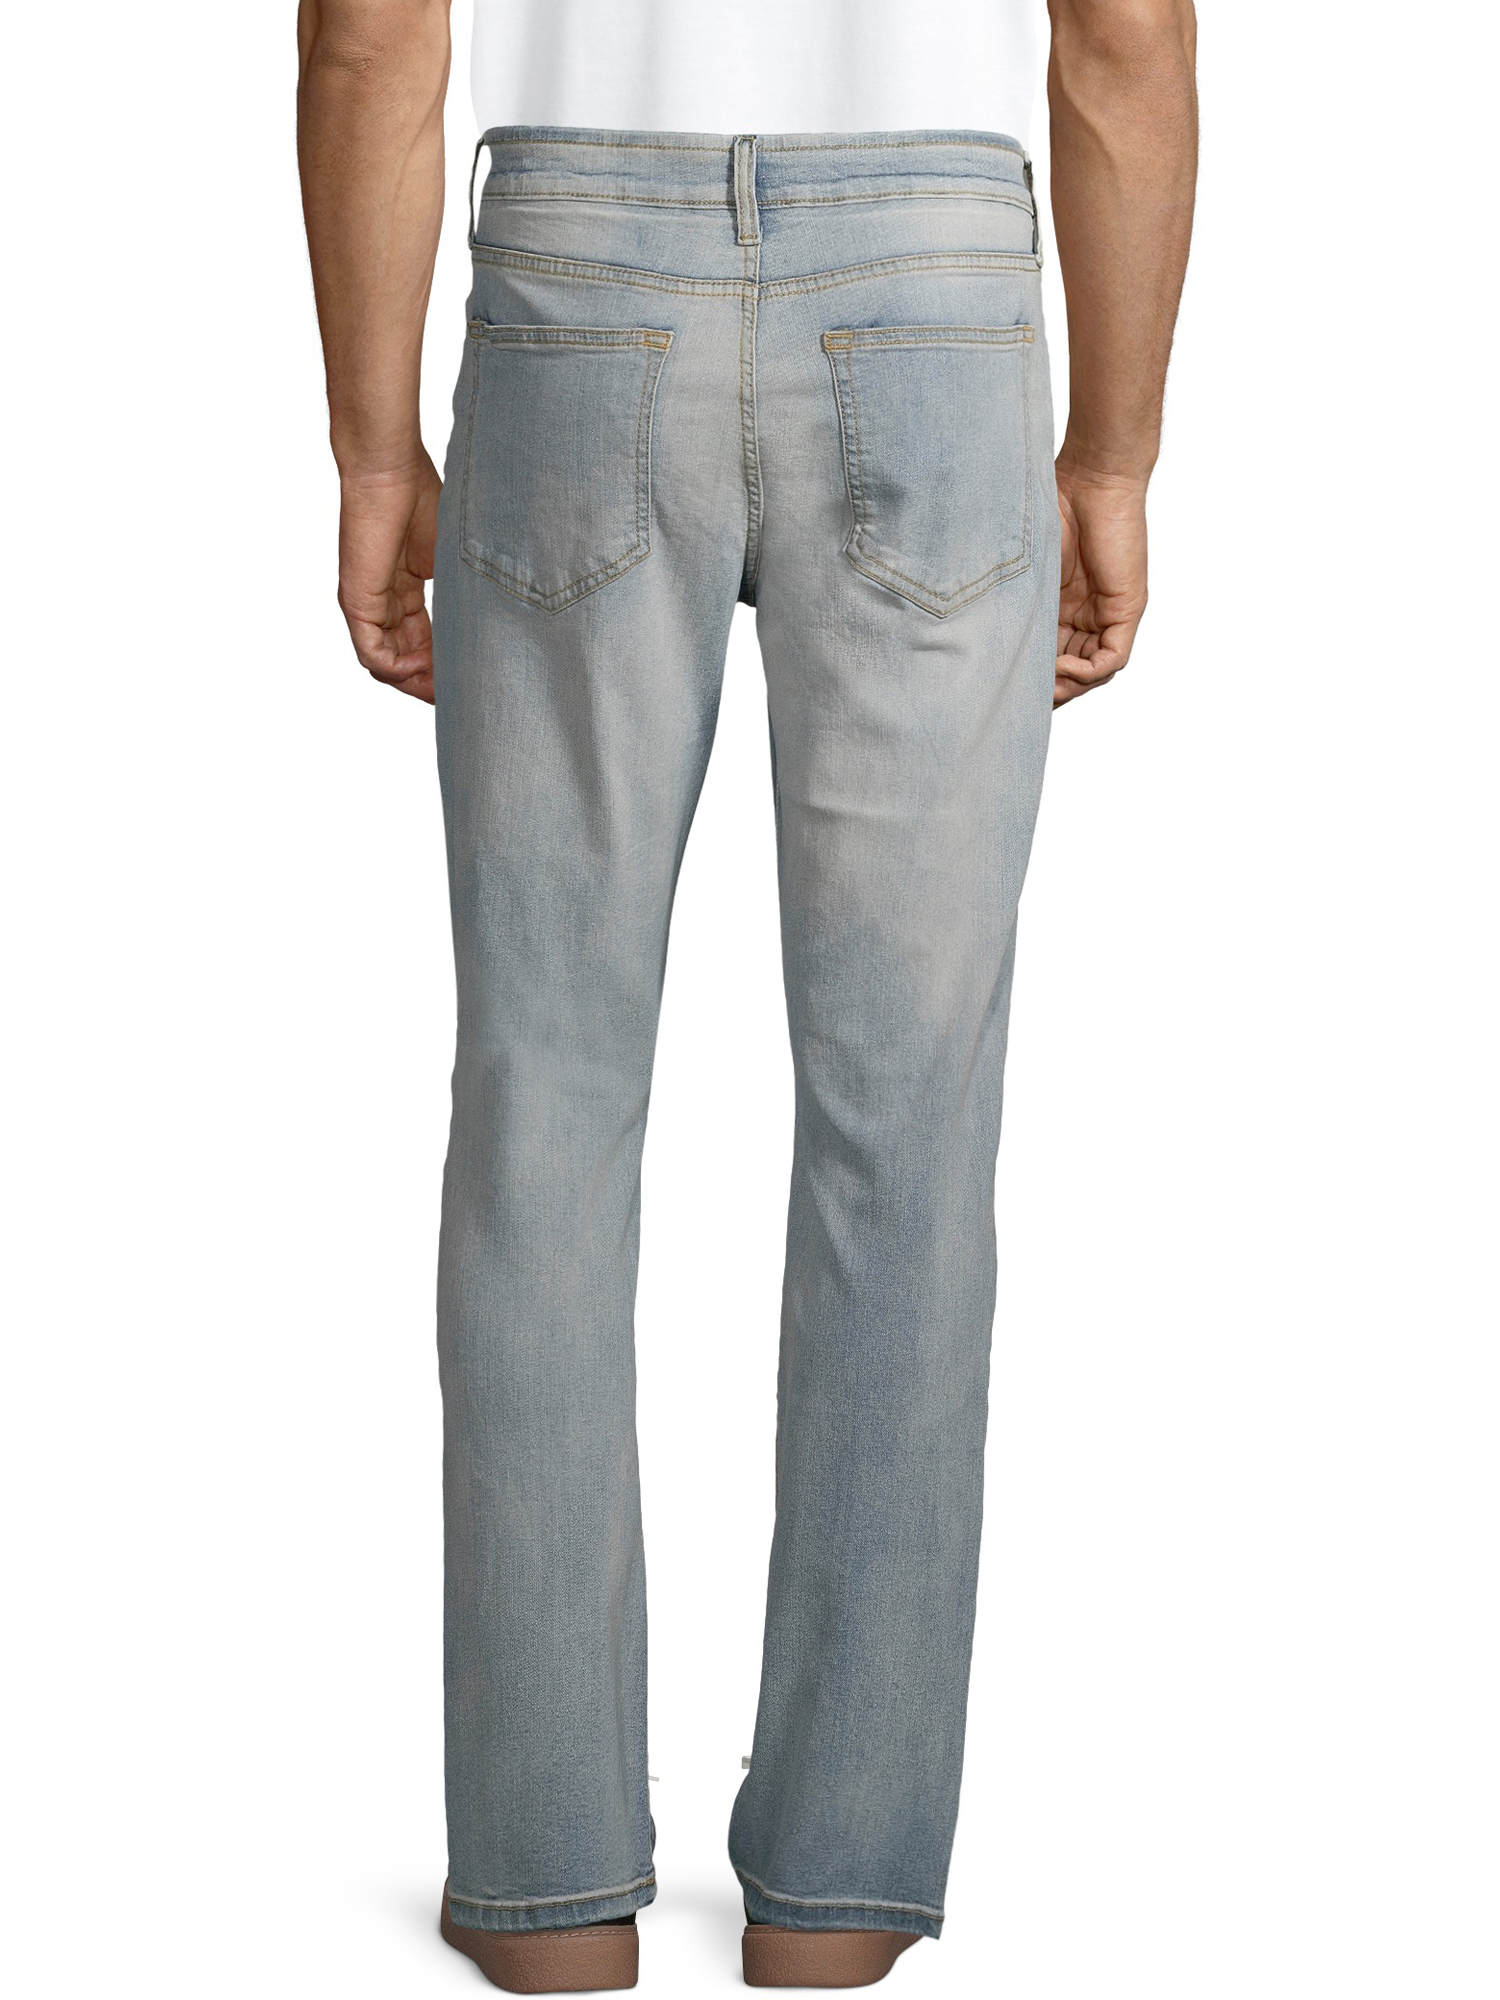 Lazer Men's Flex Denim Bootcut Jeans, Waist Sizes 29"-38", Bootcut Mens Jeans - image 2 of 4